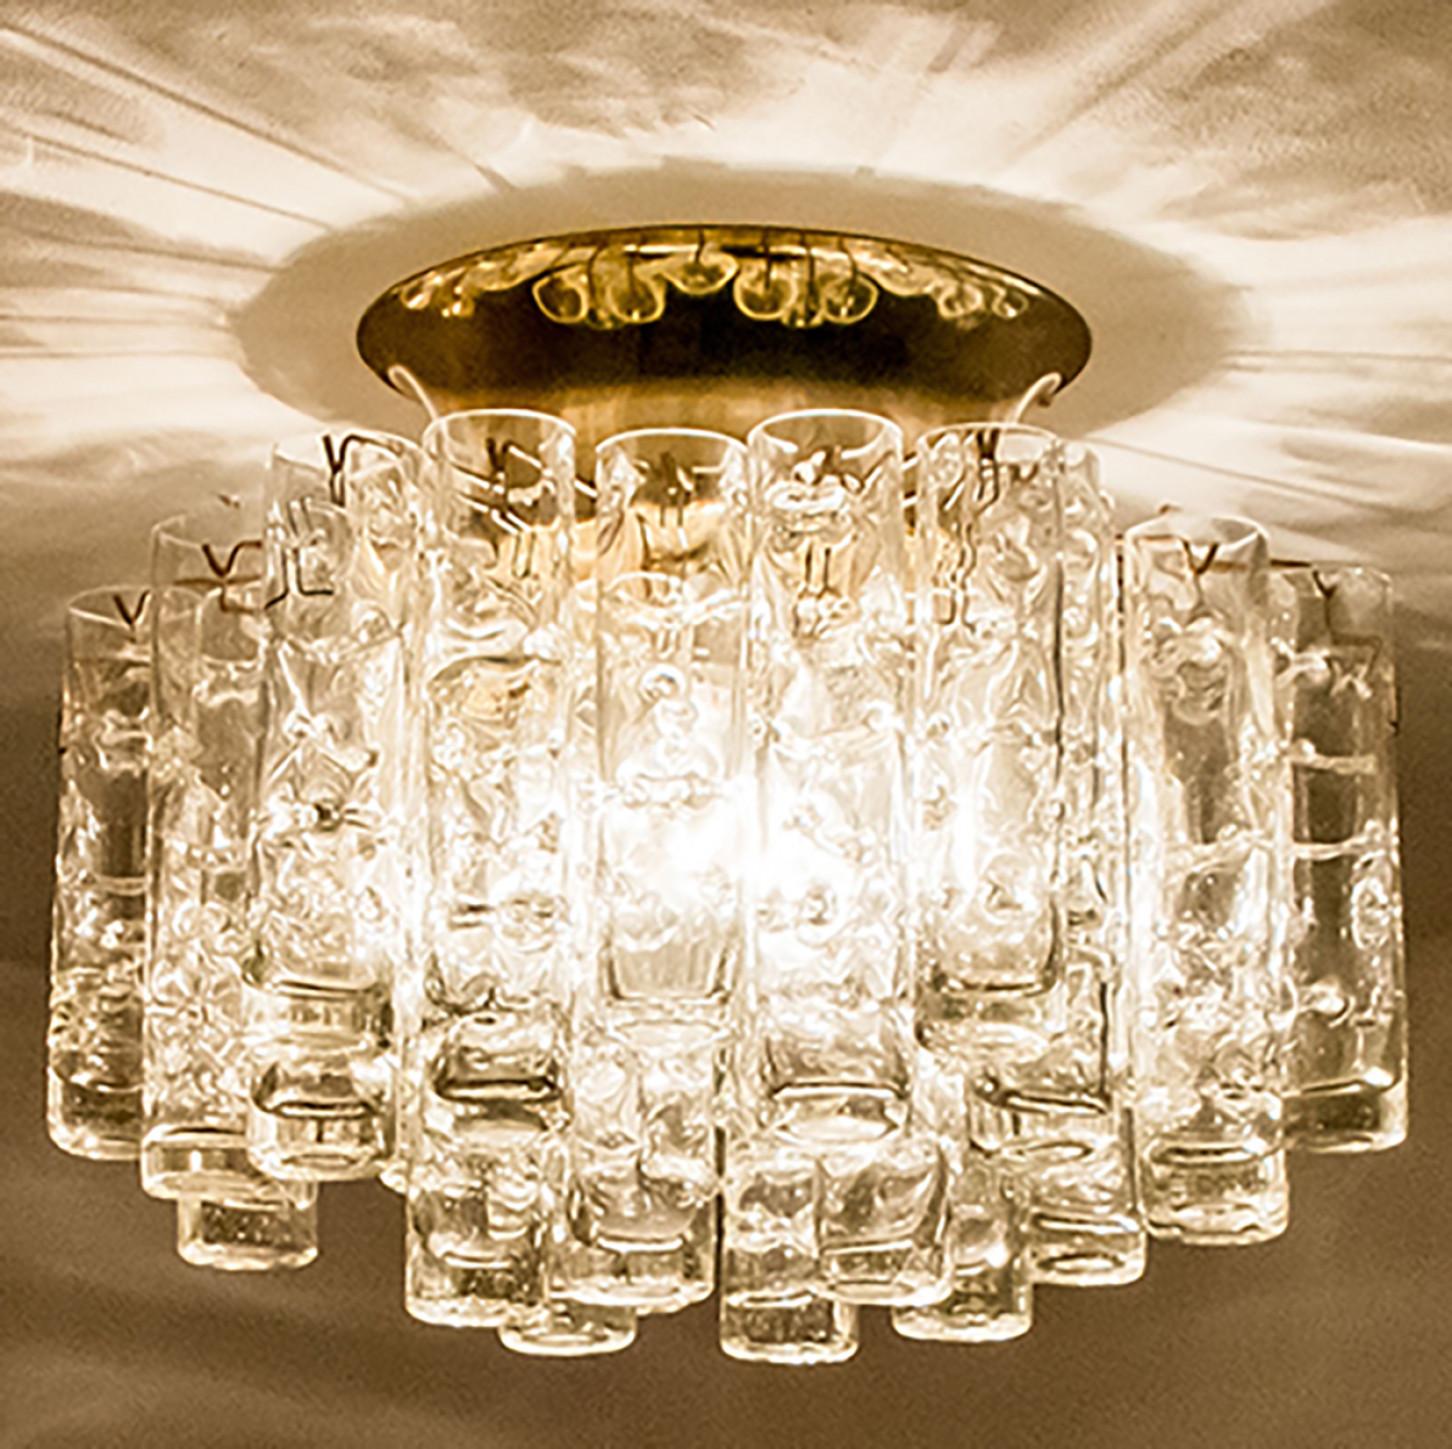 Sternförmige Glaseinbauleuchte, hergestellt von Doria Leuchten Deutschland um 1960.

Diese handgefertigte Leuchte besteht aus einem Messingsockel mit einer Reihe runder röhrenförmiger Stäbe aus hochwertigem, strukturiertem Kunstglas. Durch die